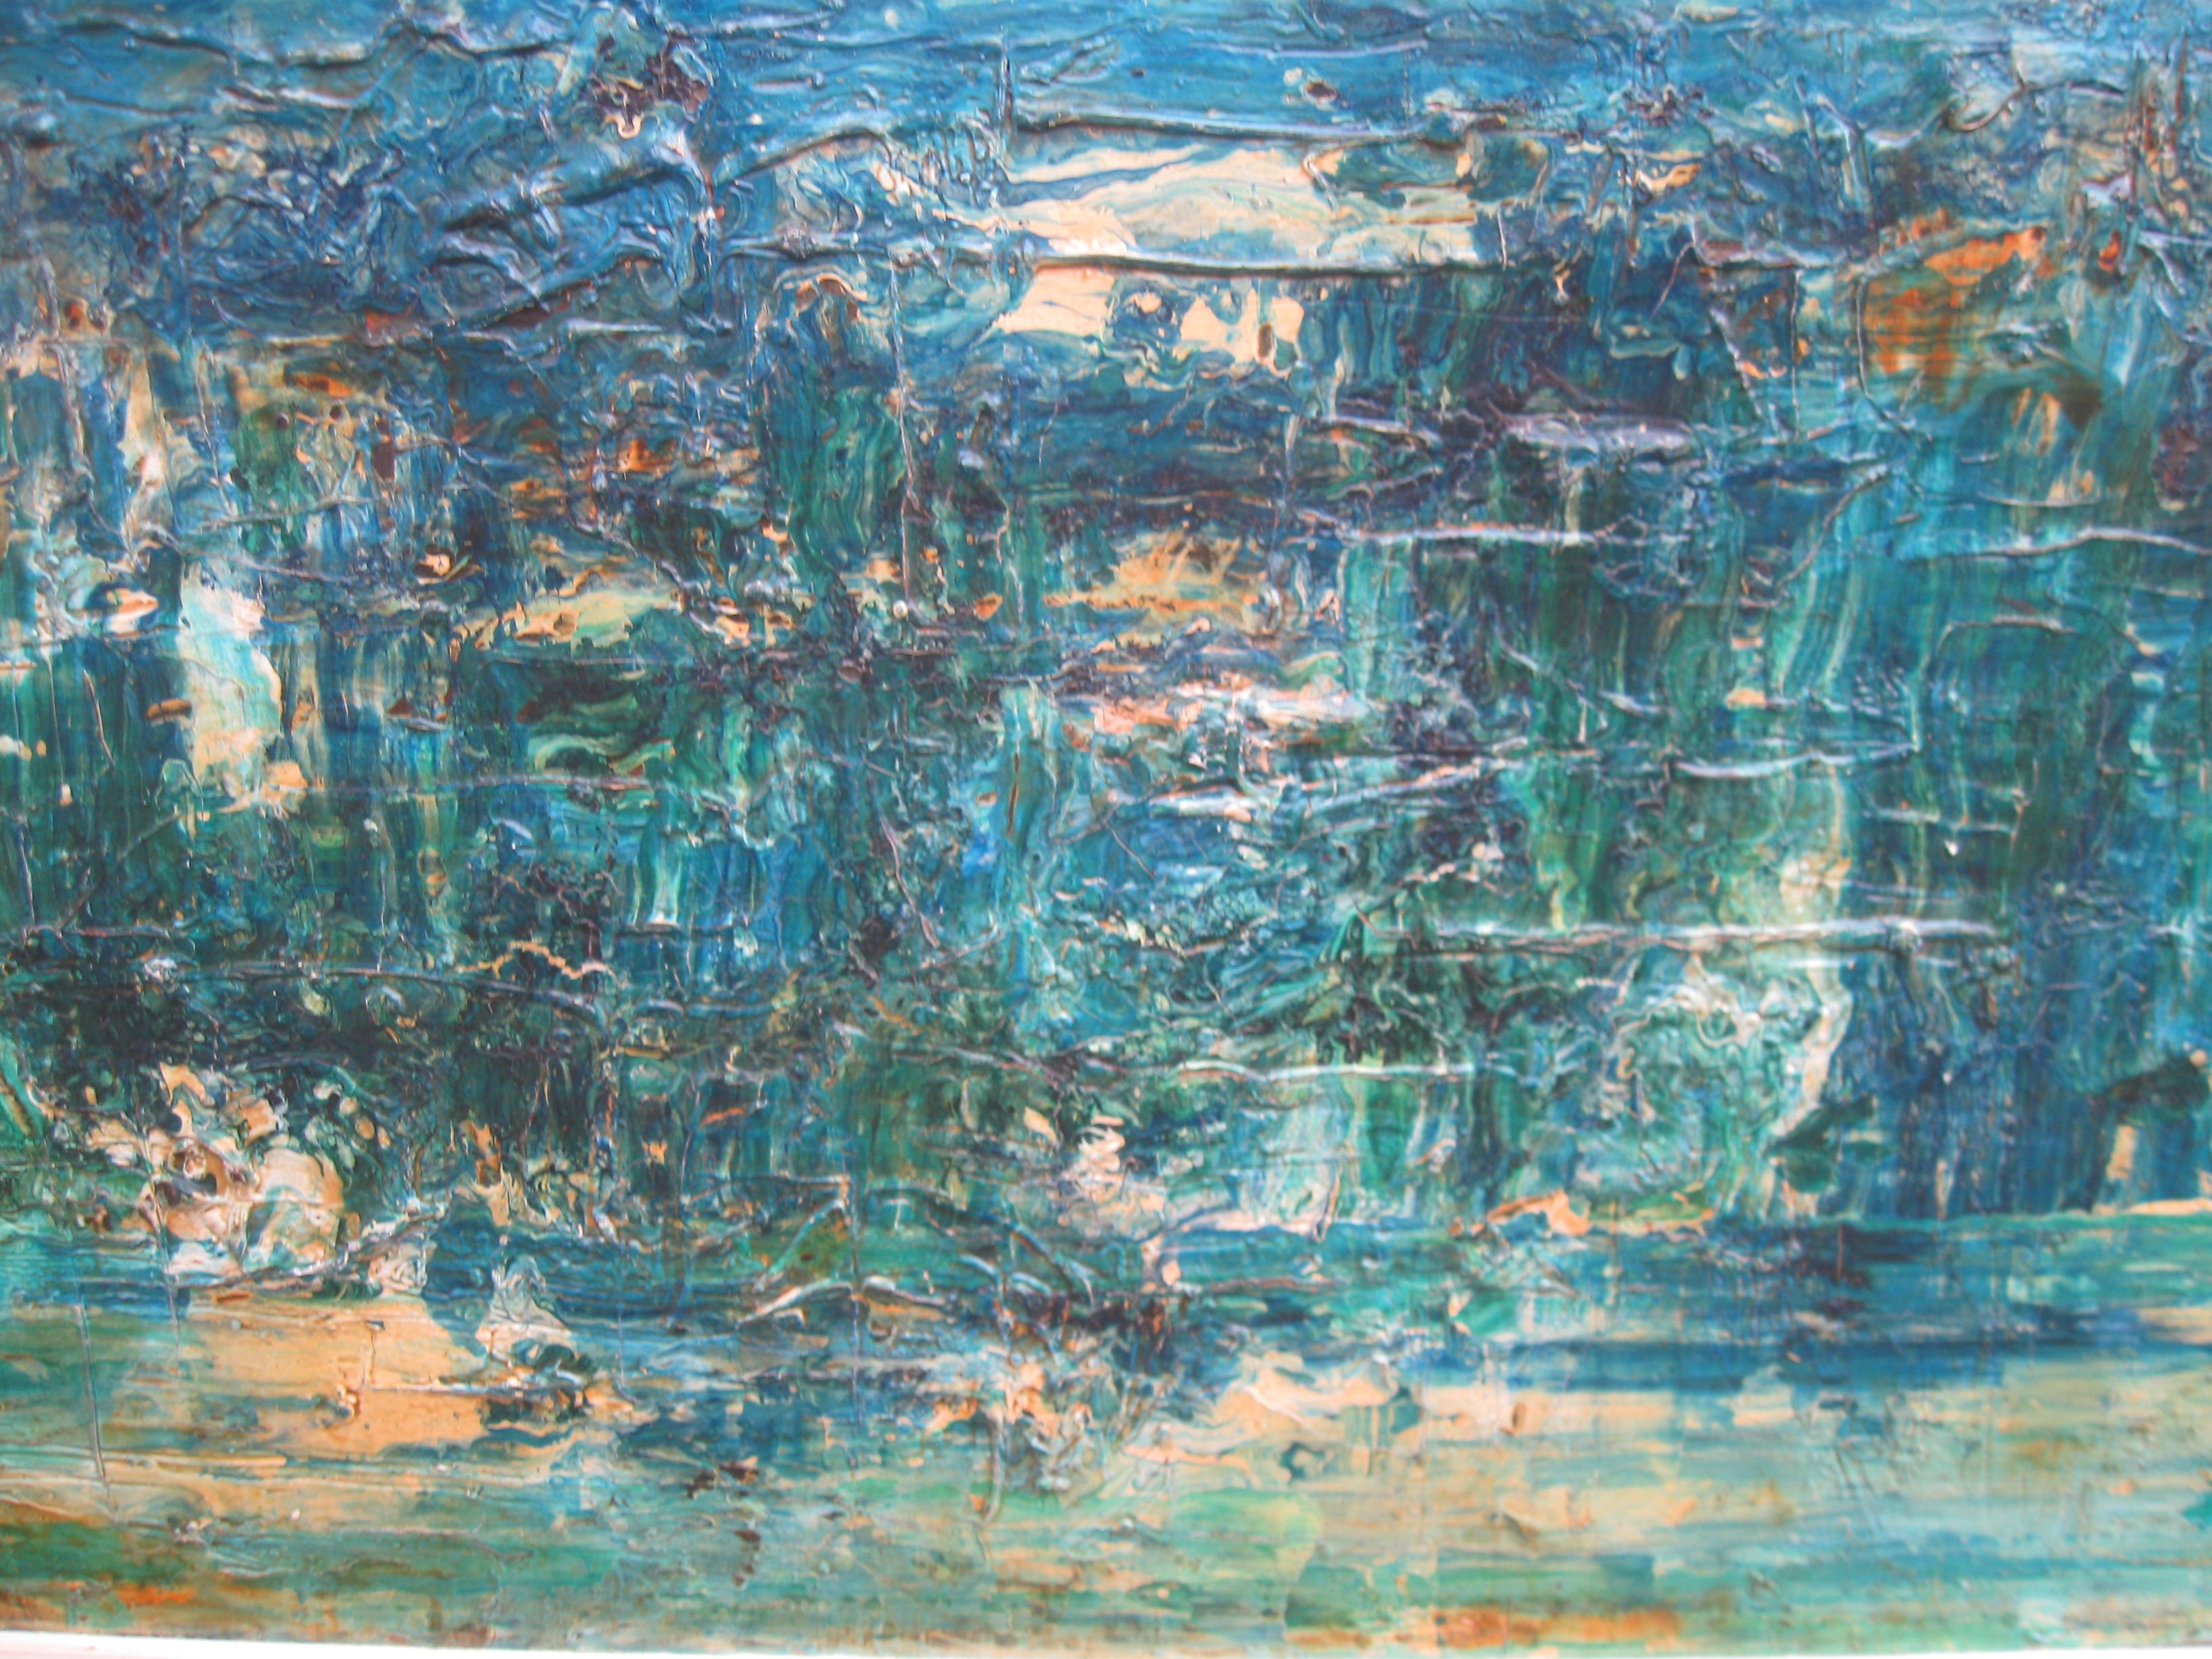 Großes abstrakt-expressionistisches Ölgemälde des 20. Jahrhunderts, um 1975 (Abstrakter Expressionismus), Painting, von Stanley Smith